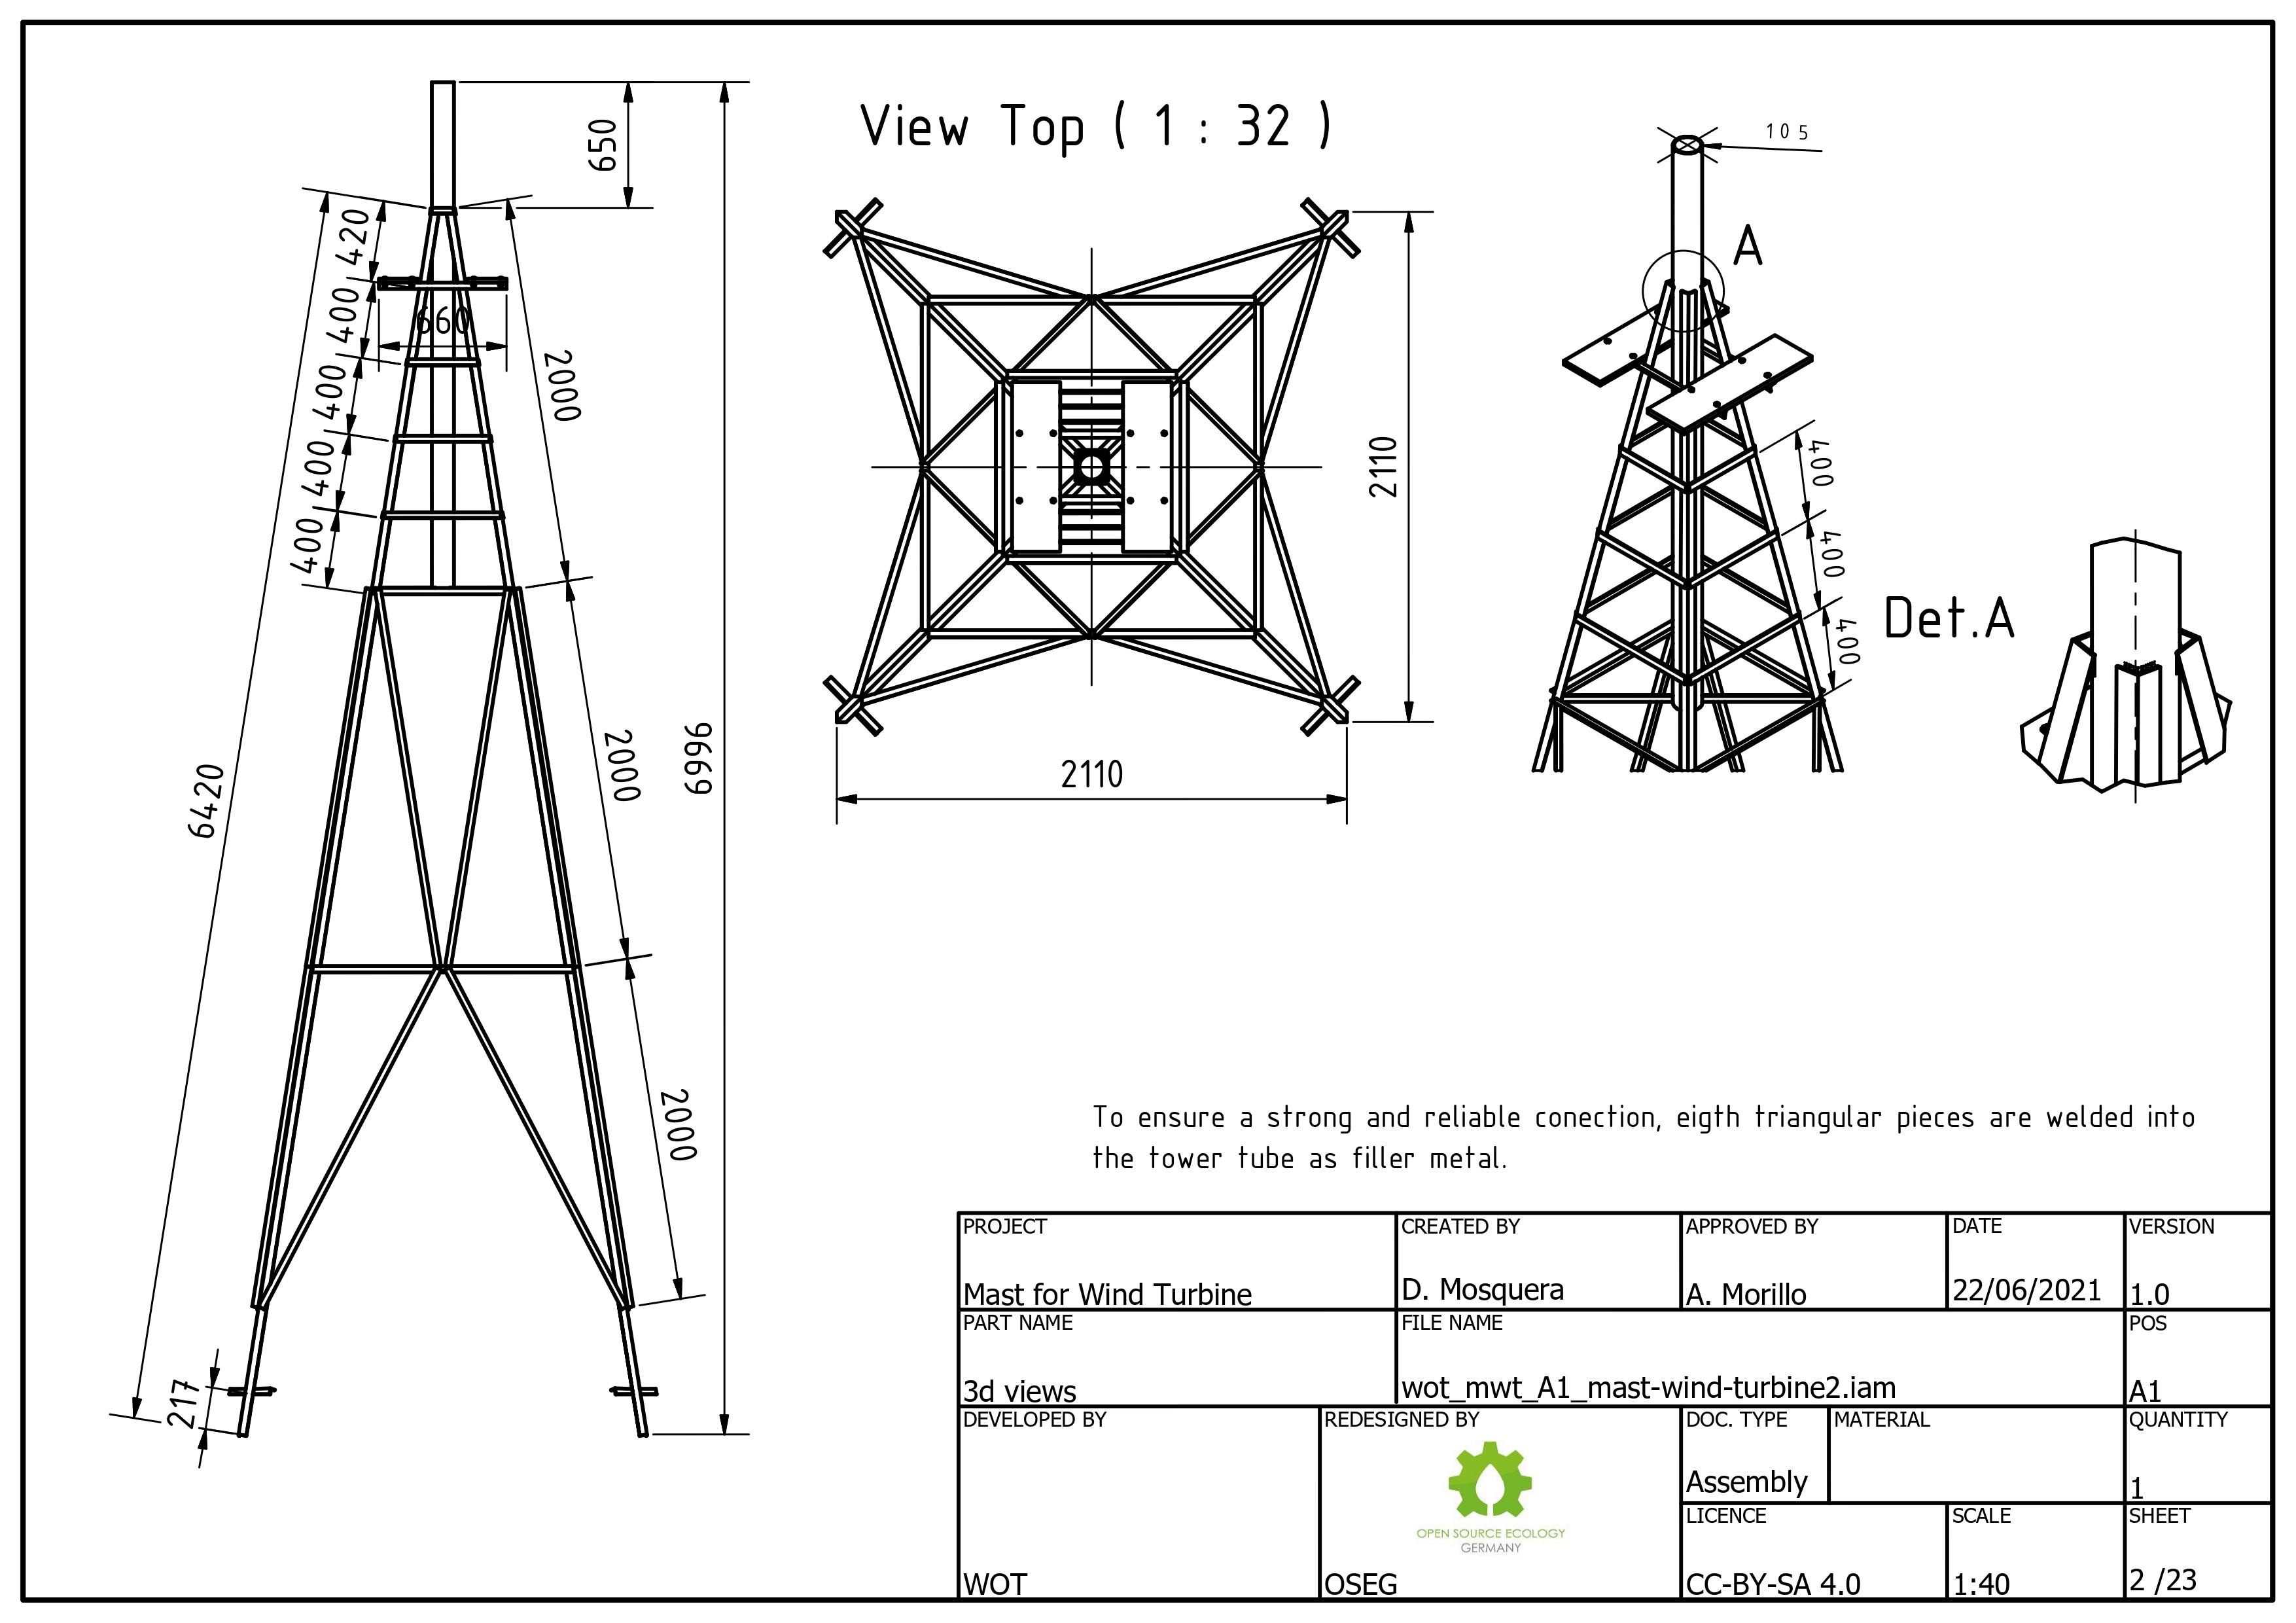 Wot mwt lattice-tower-mast-for-wind-turbine 0002.jpg